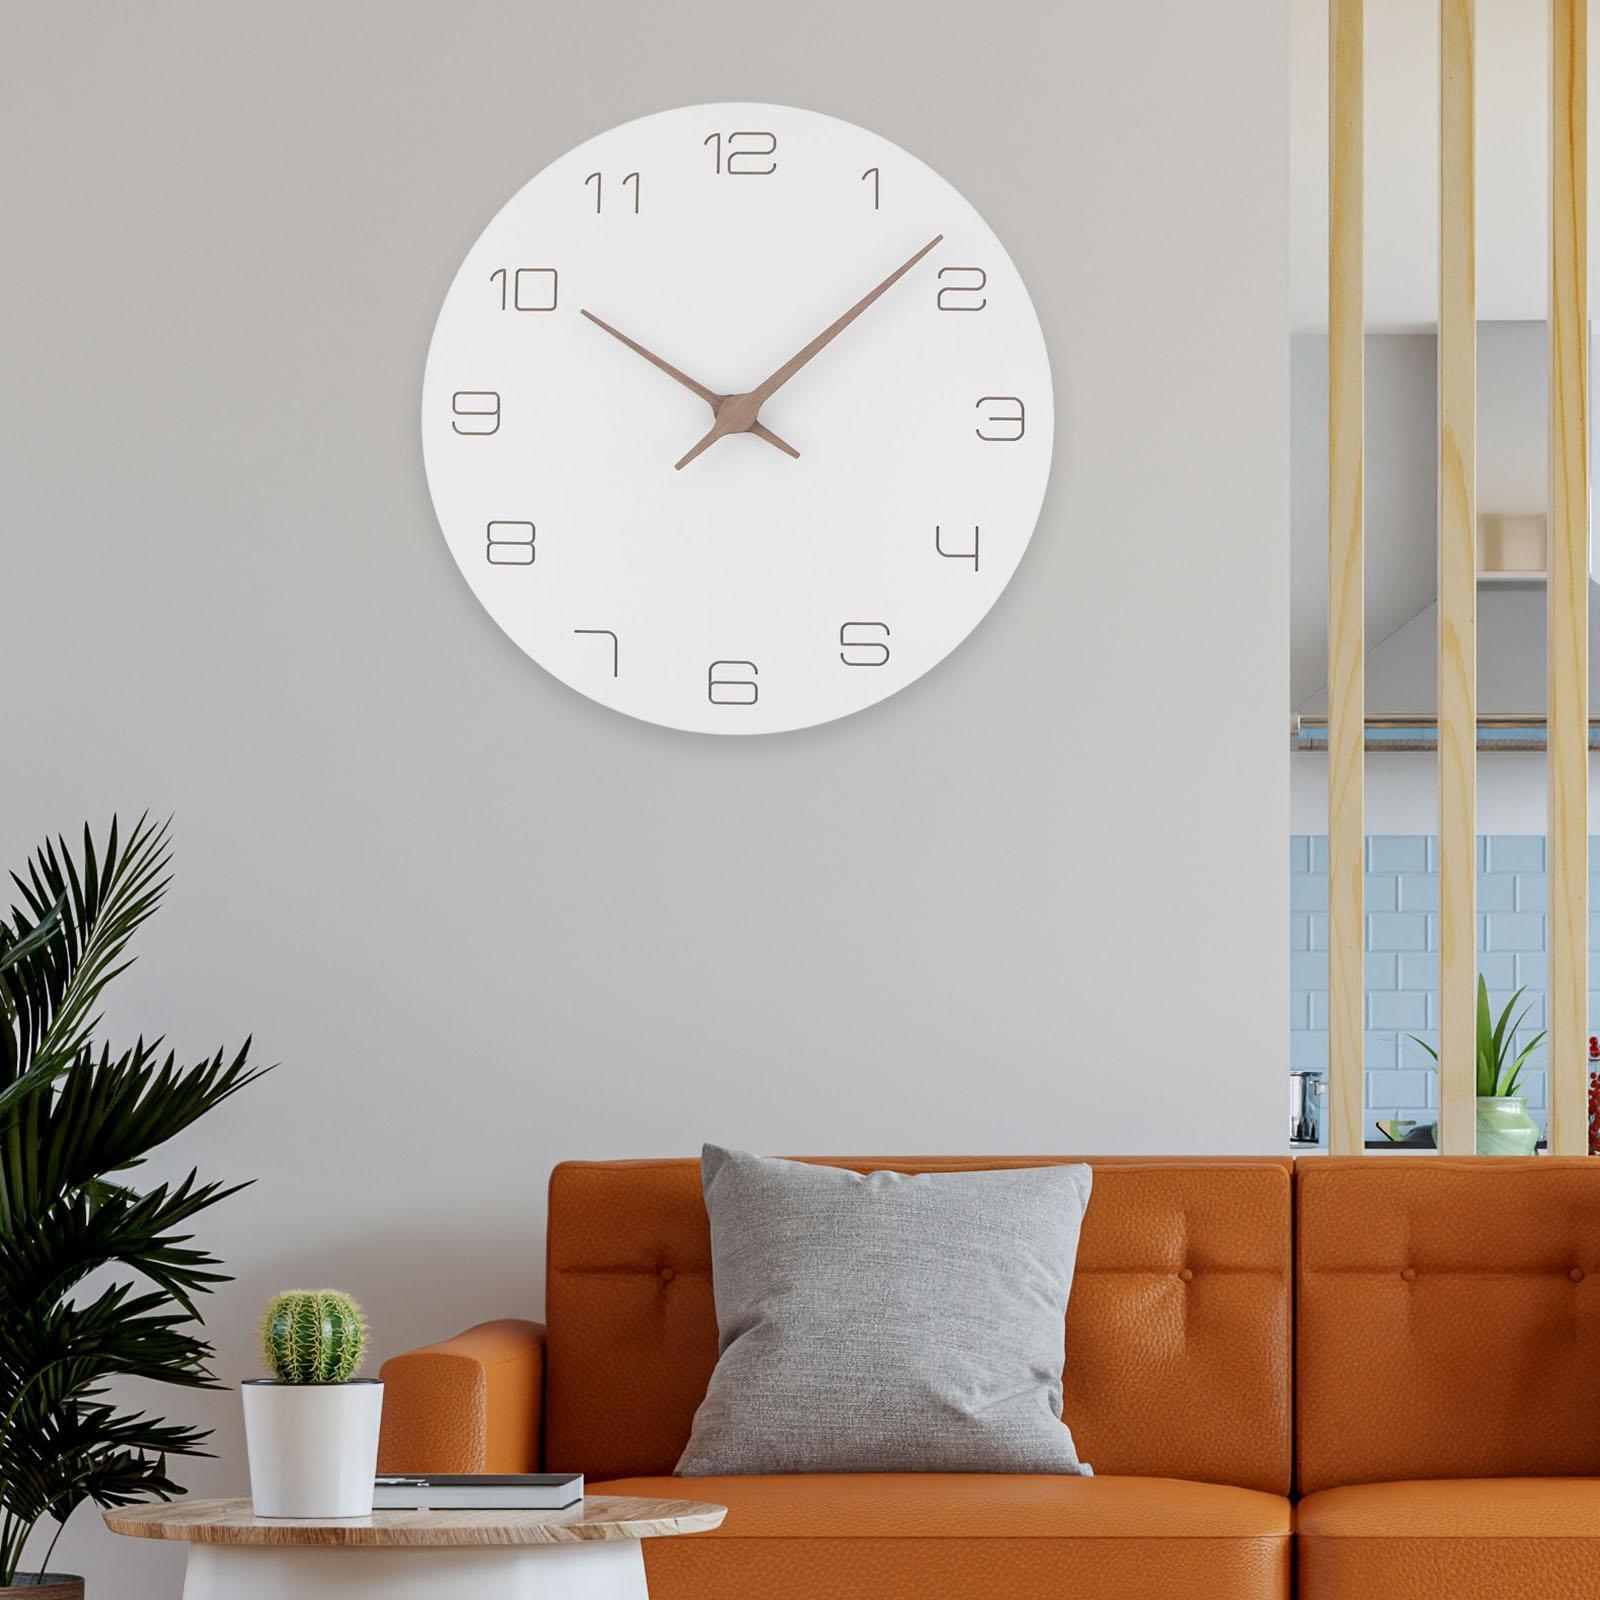 Wood  Clocks Hanging  Office  Minimalist Wall Clock